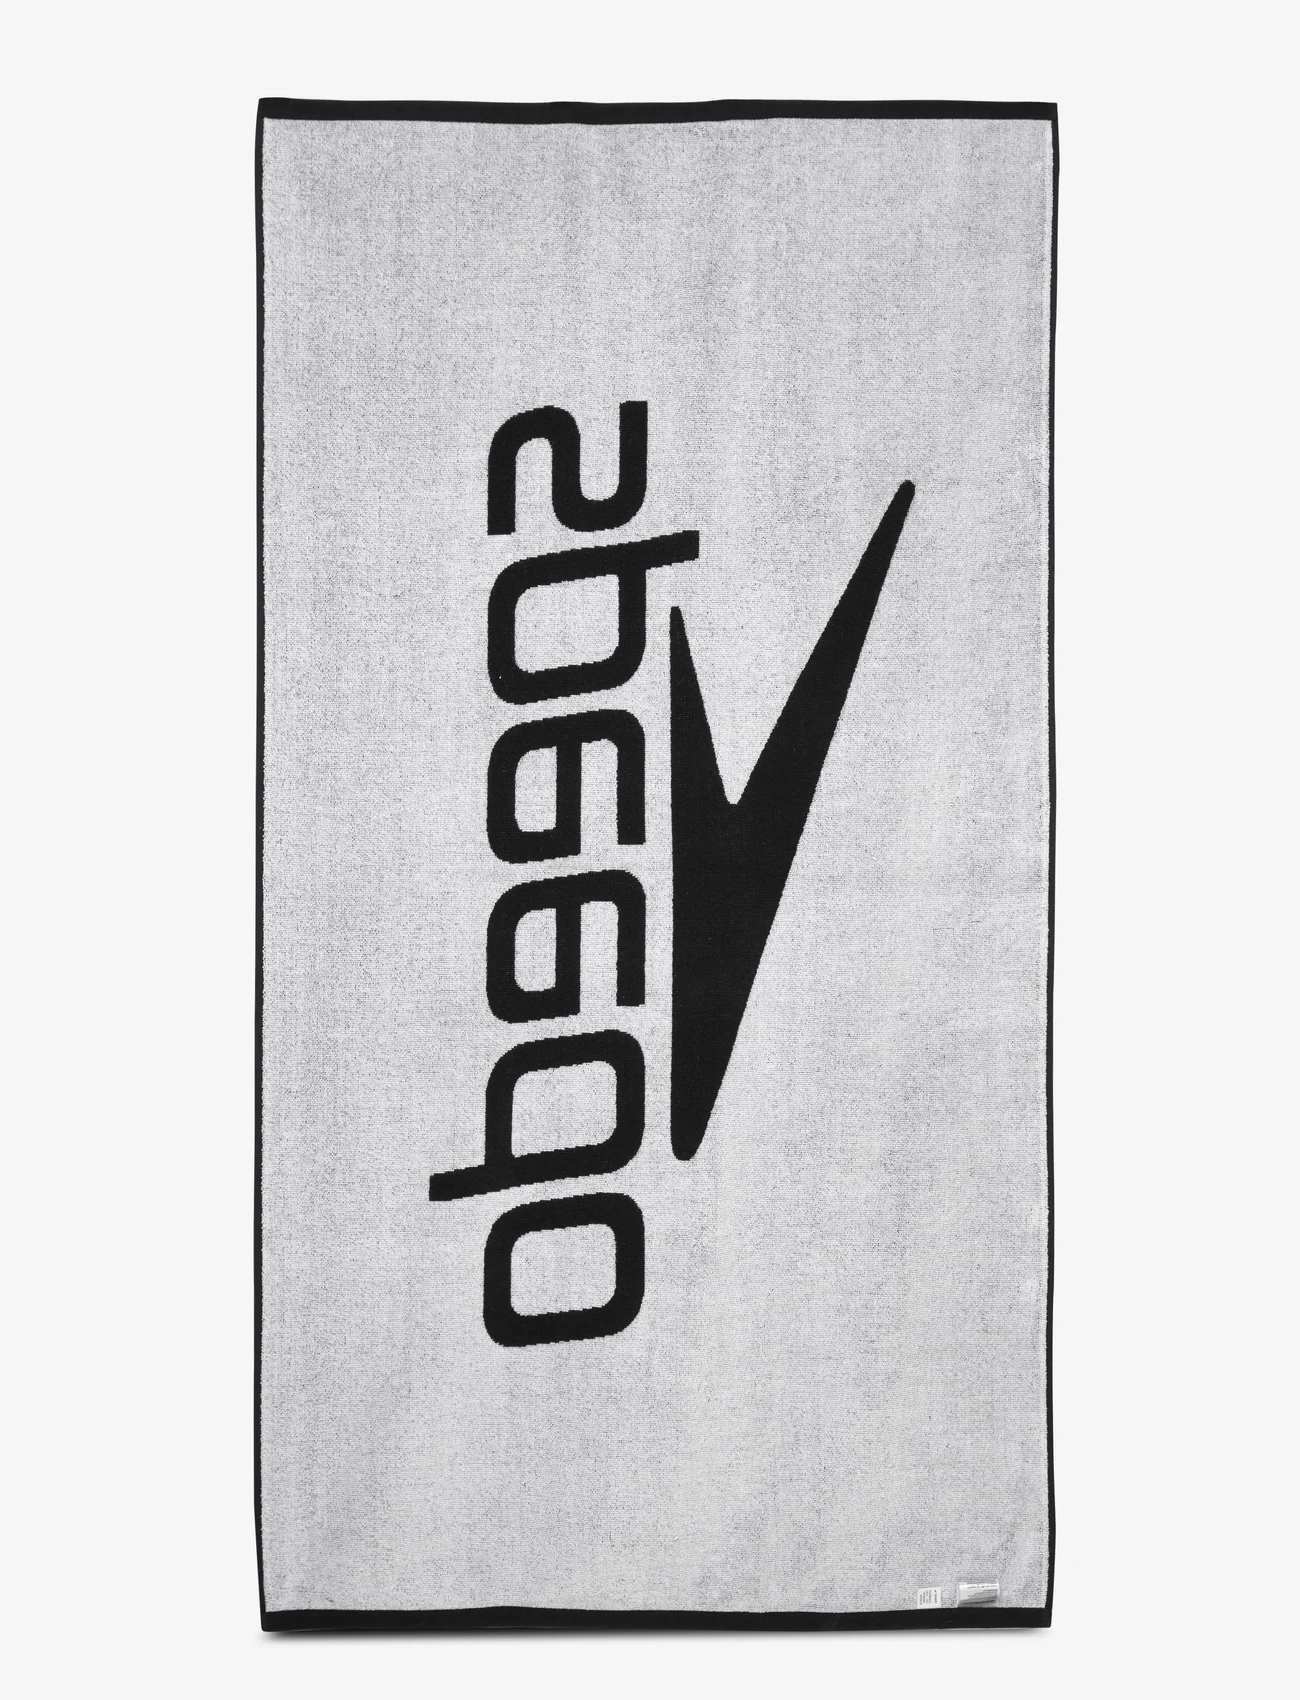 Speedo - Logo towel - najniższe ceny - black/white - 1